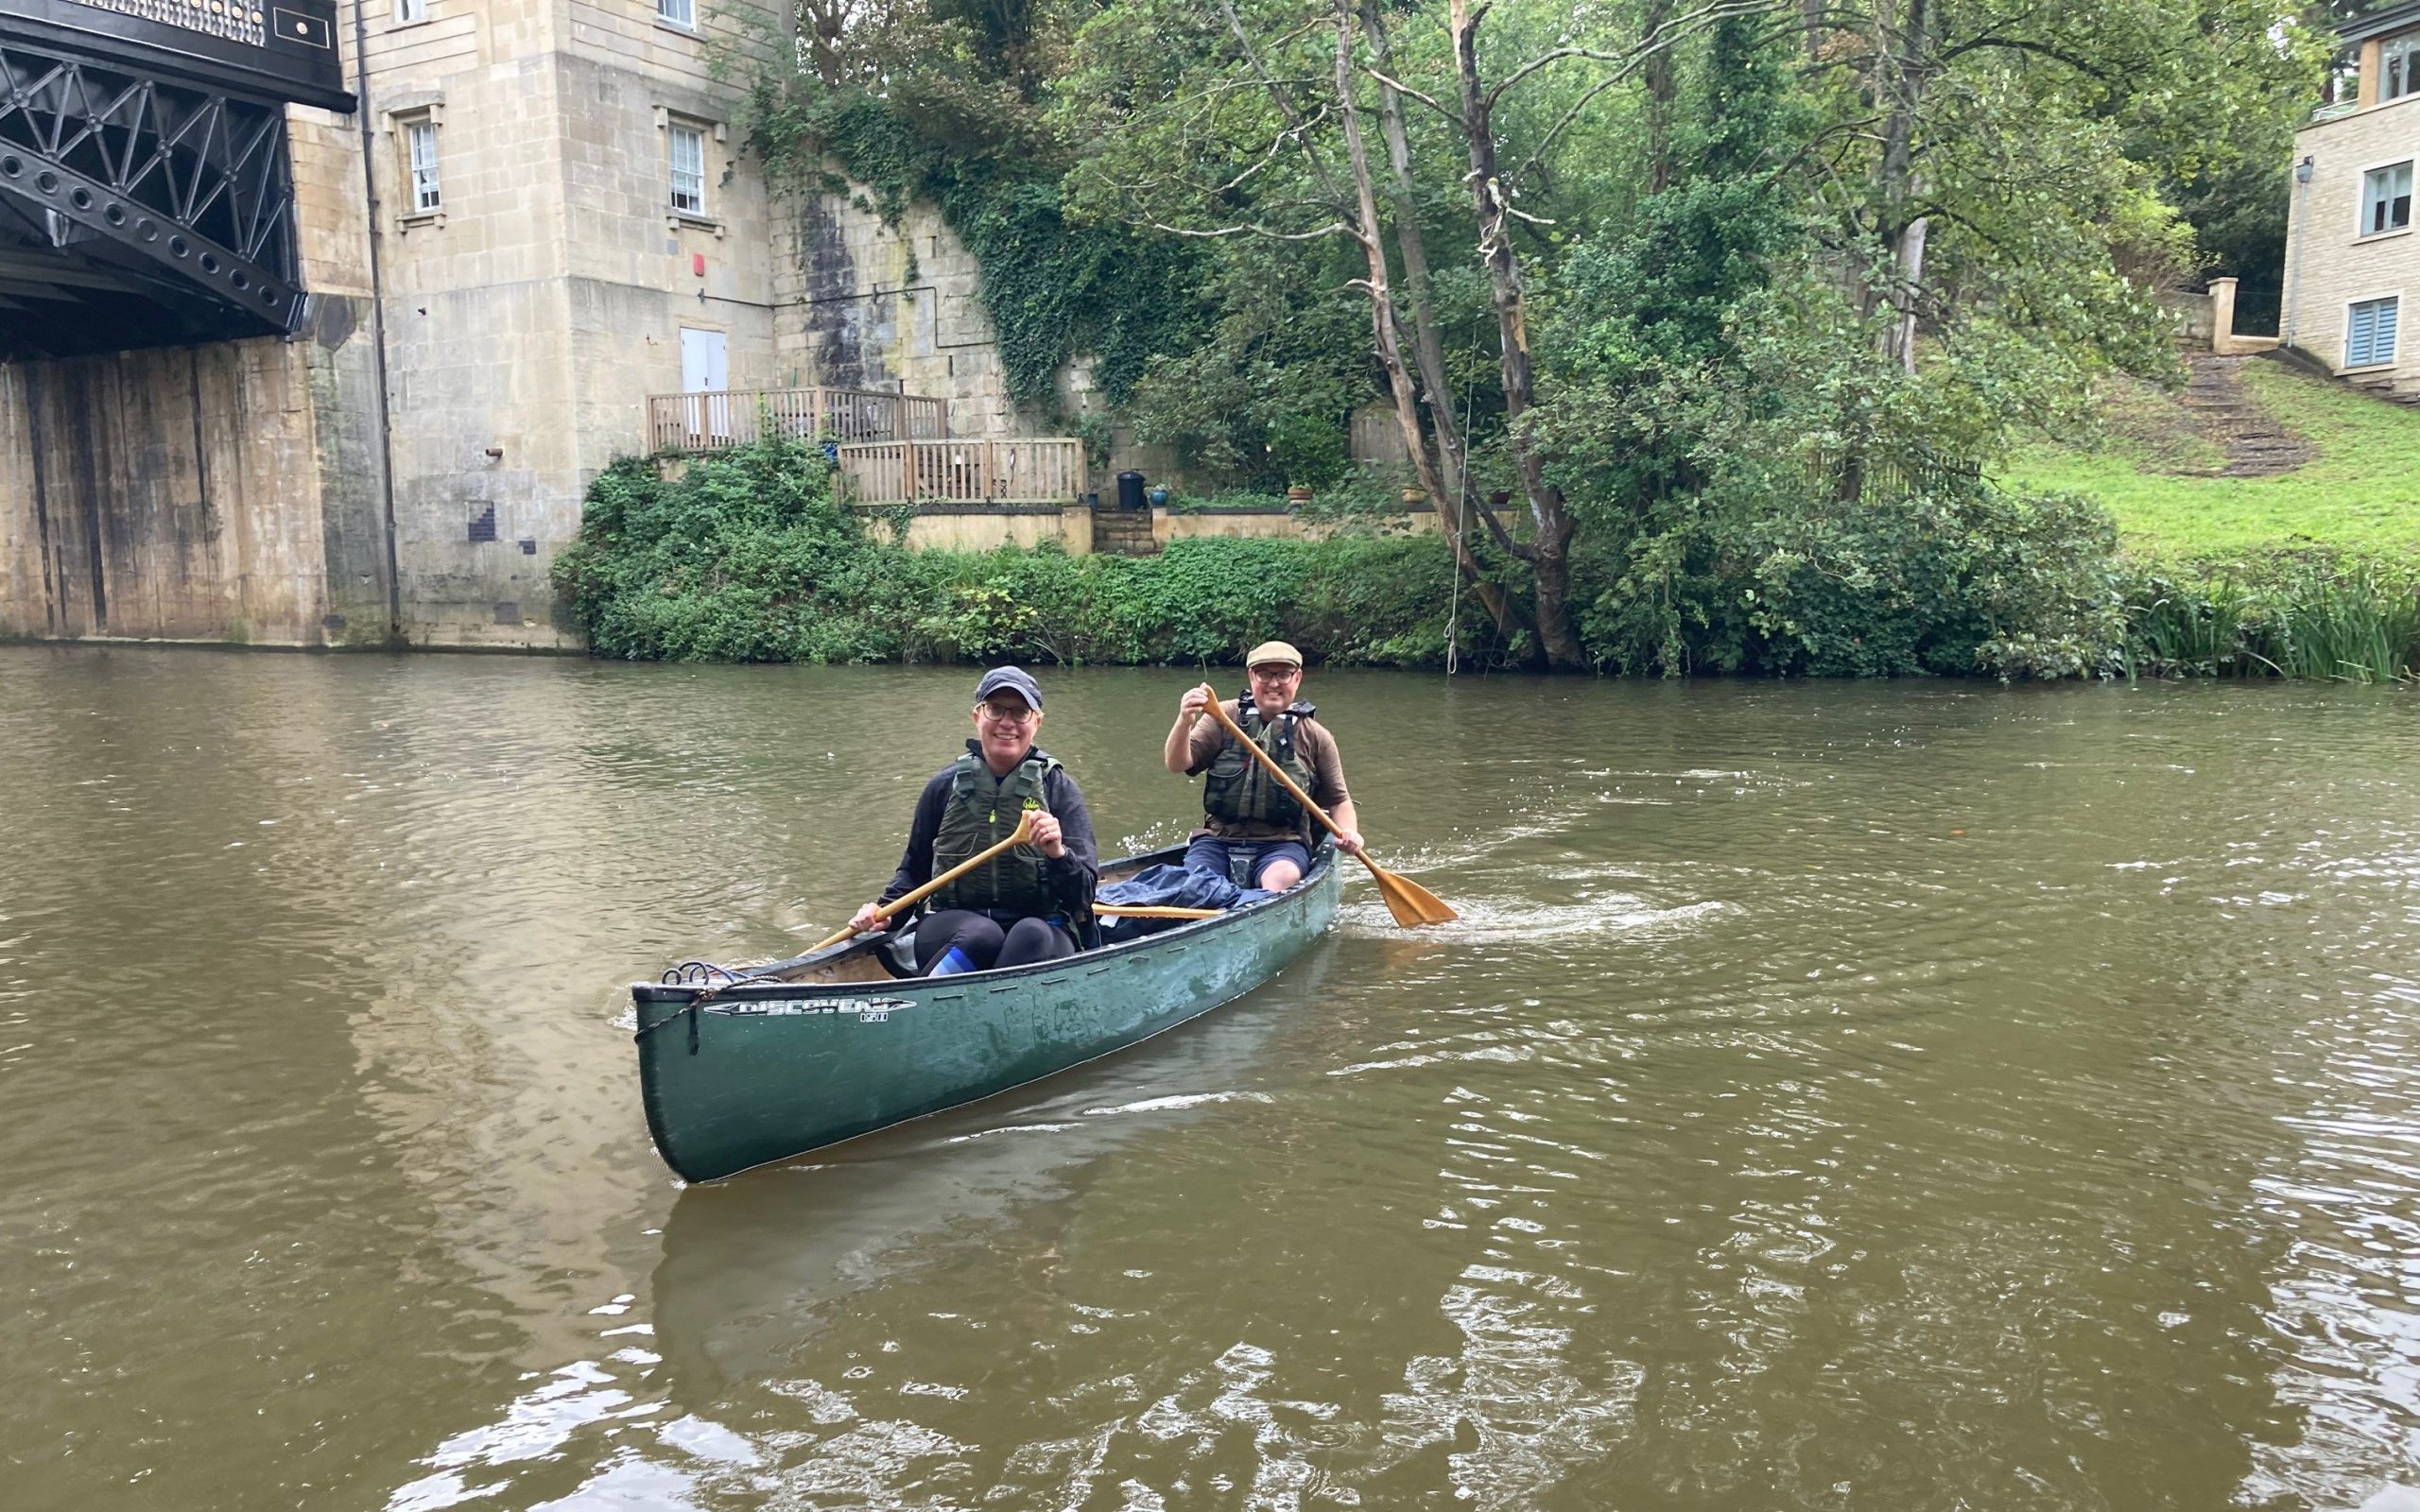 2 men in a canoe